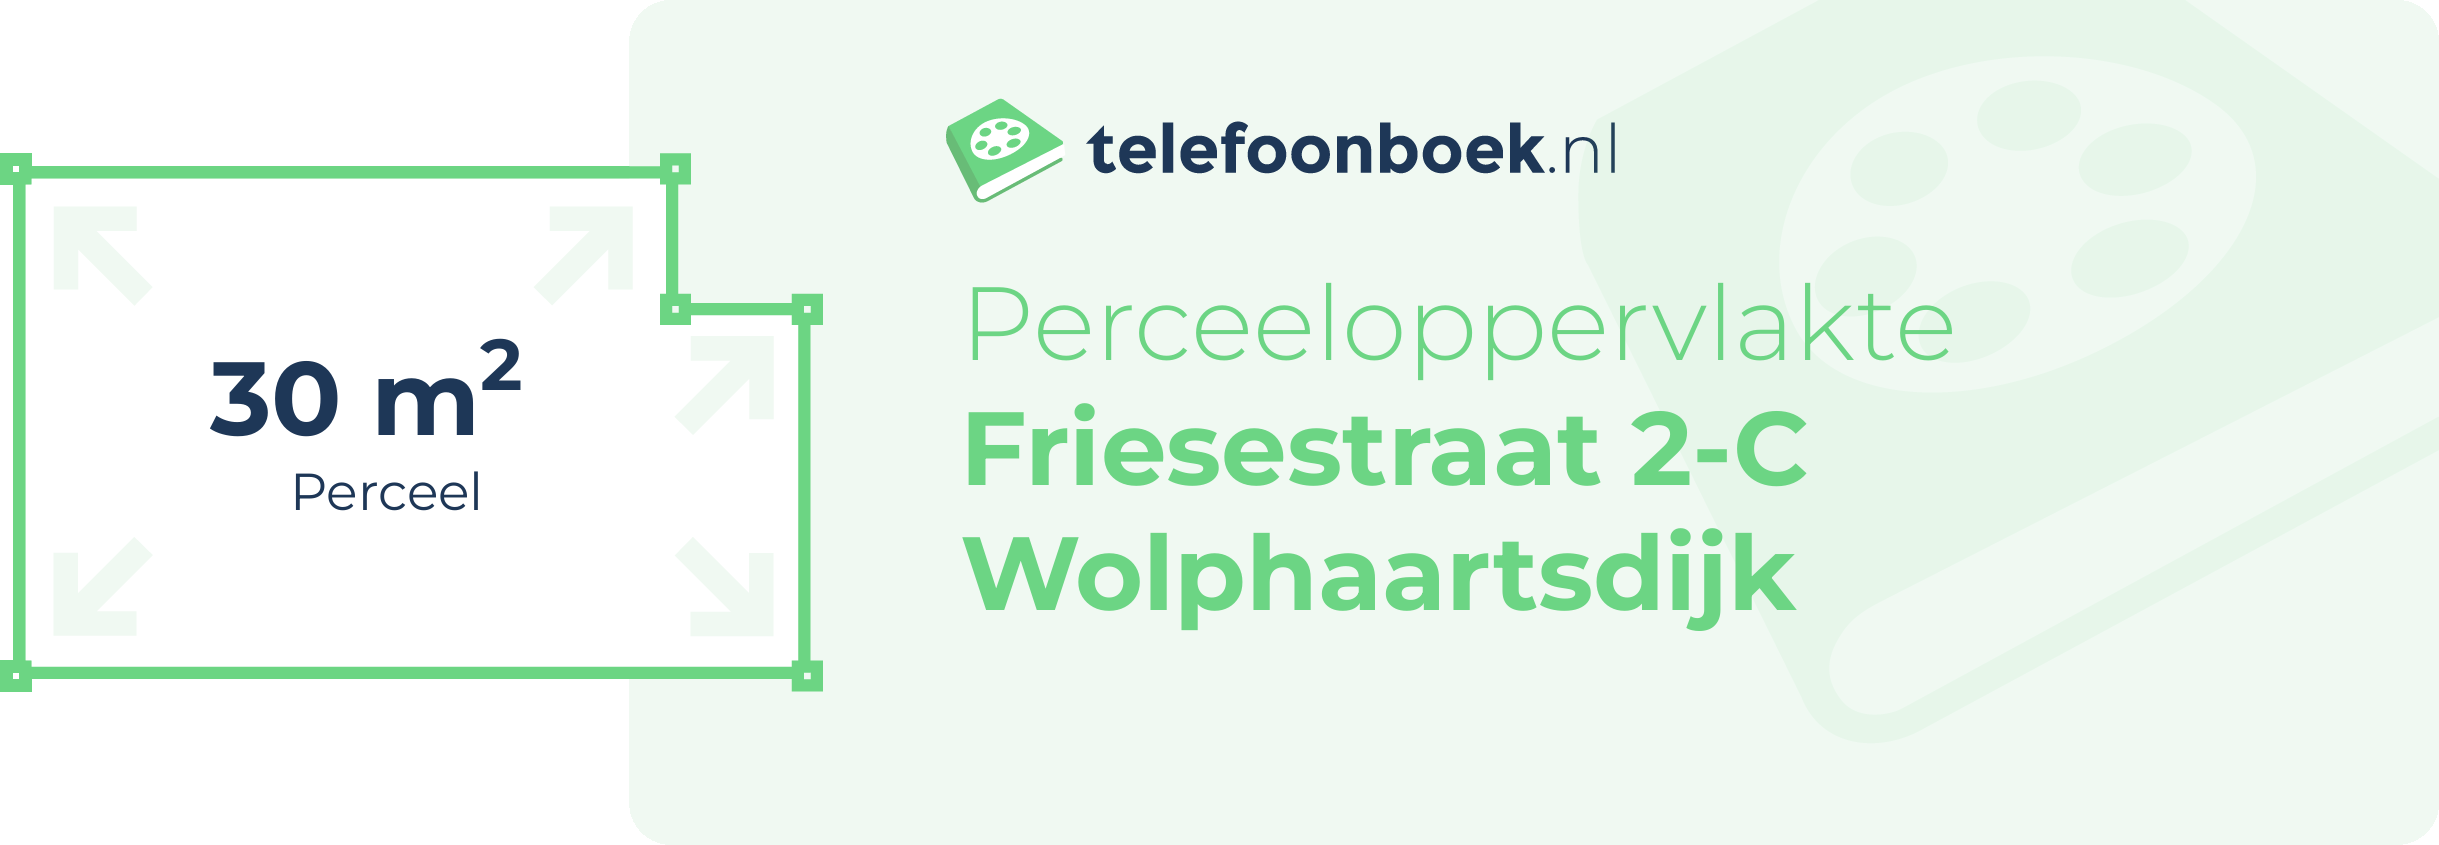 Perceeloppervlakte Friesestraat 2-C Wolphaartsdijk